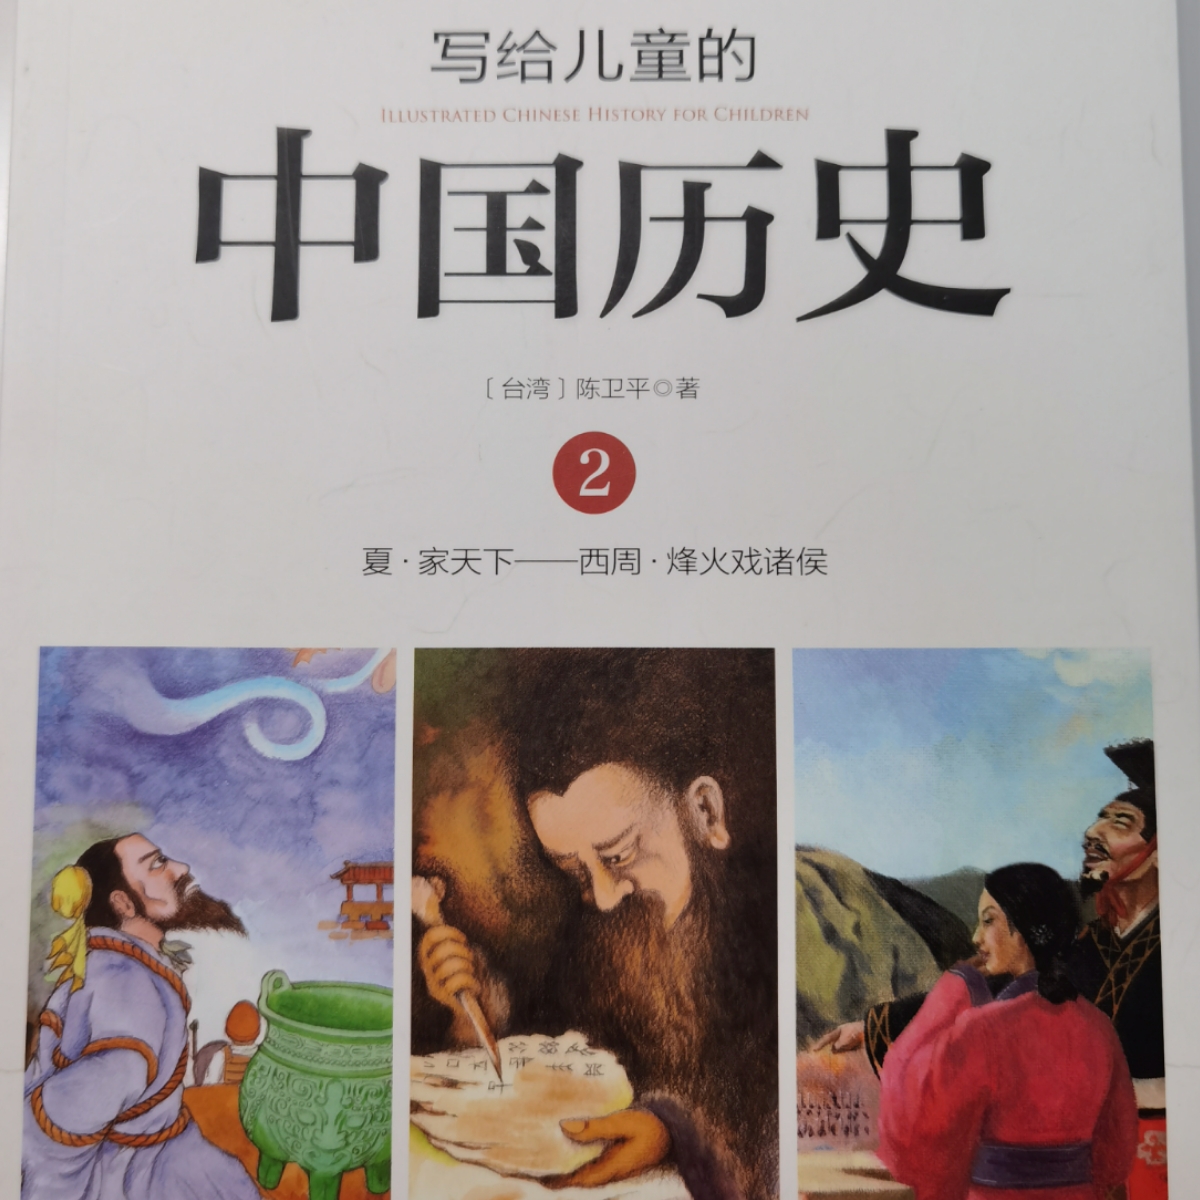 《给儿童的中国历史》